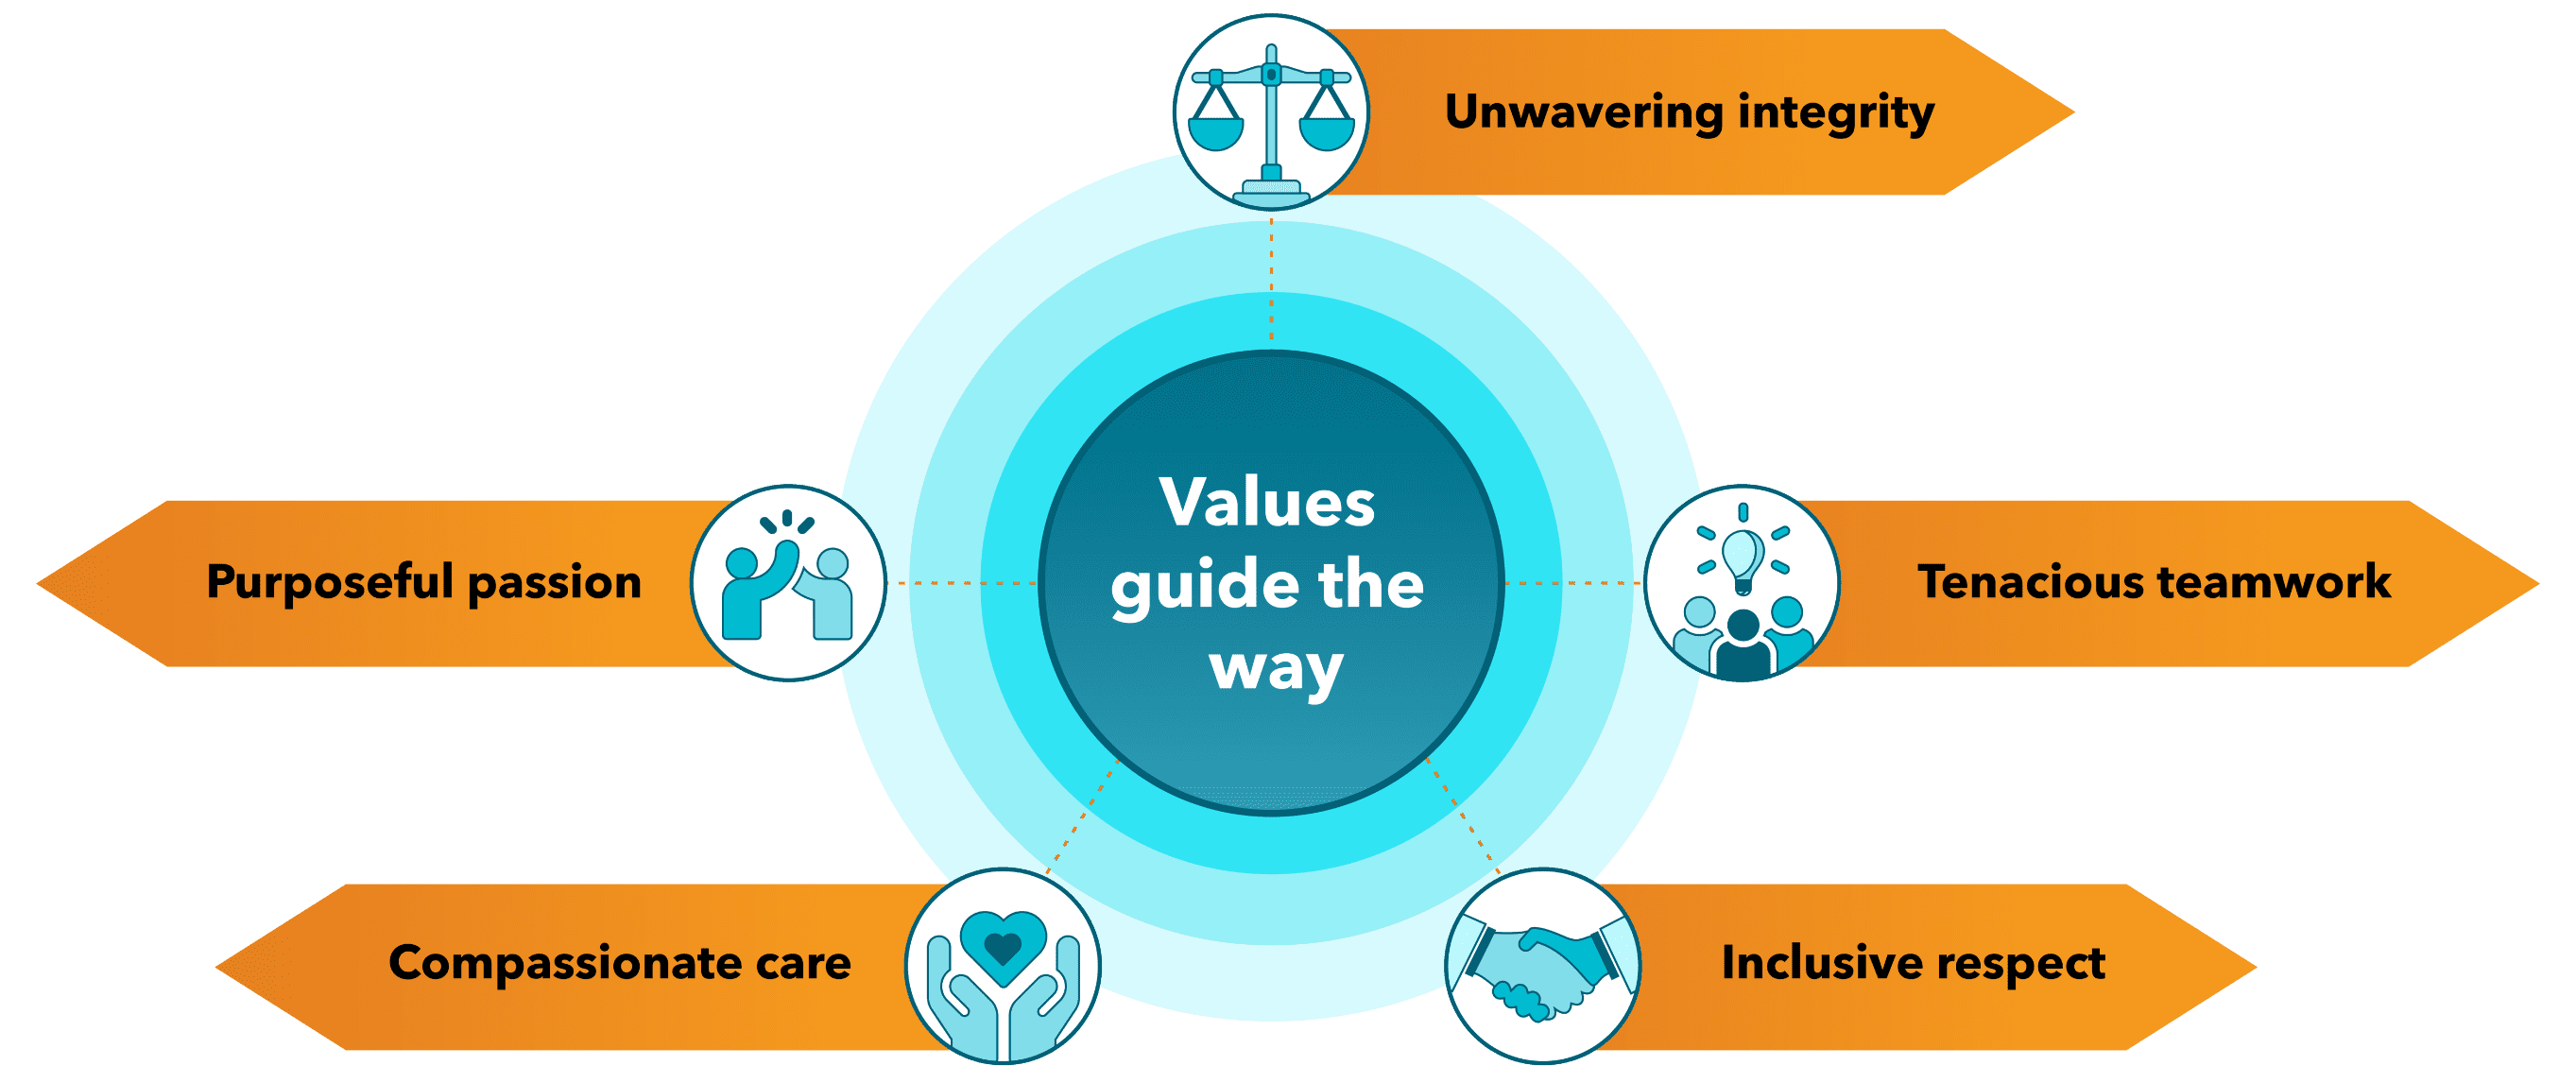 Elicio Values guide the way